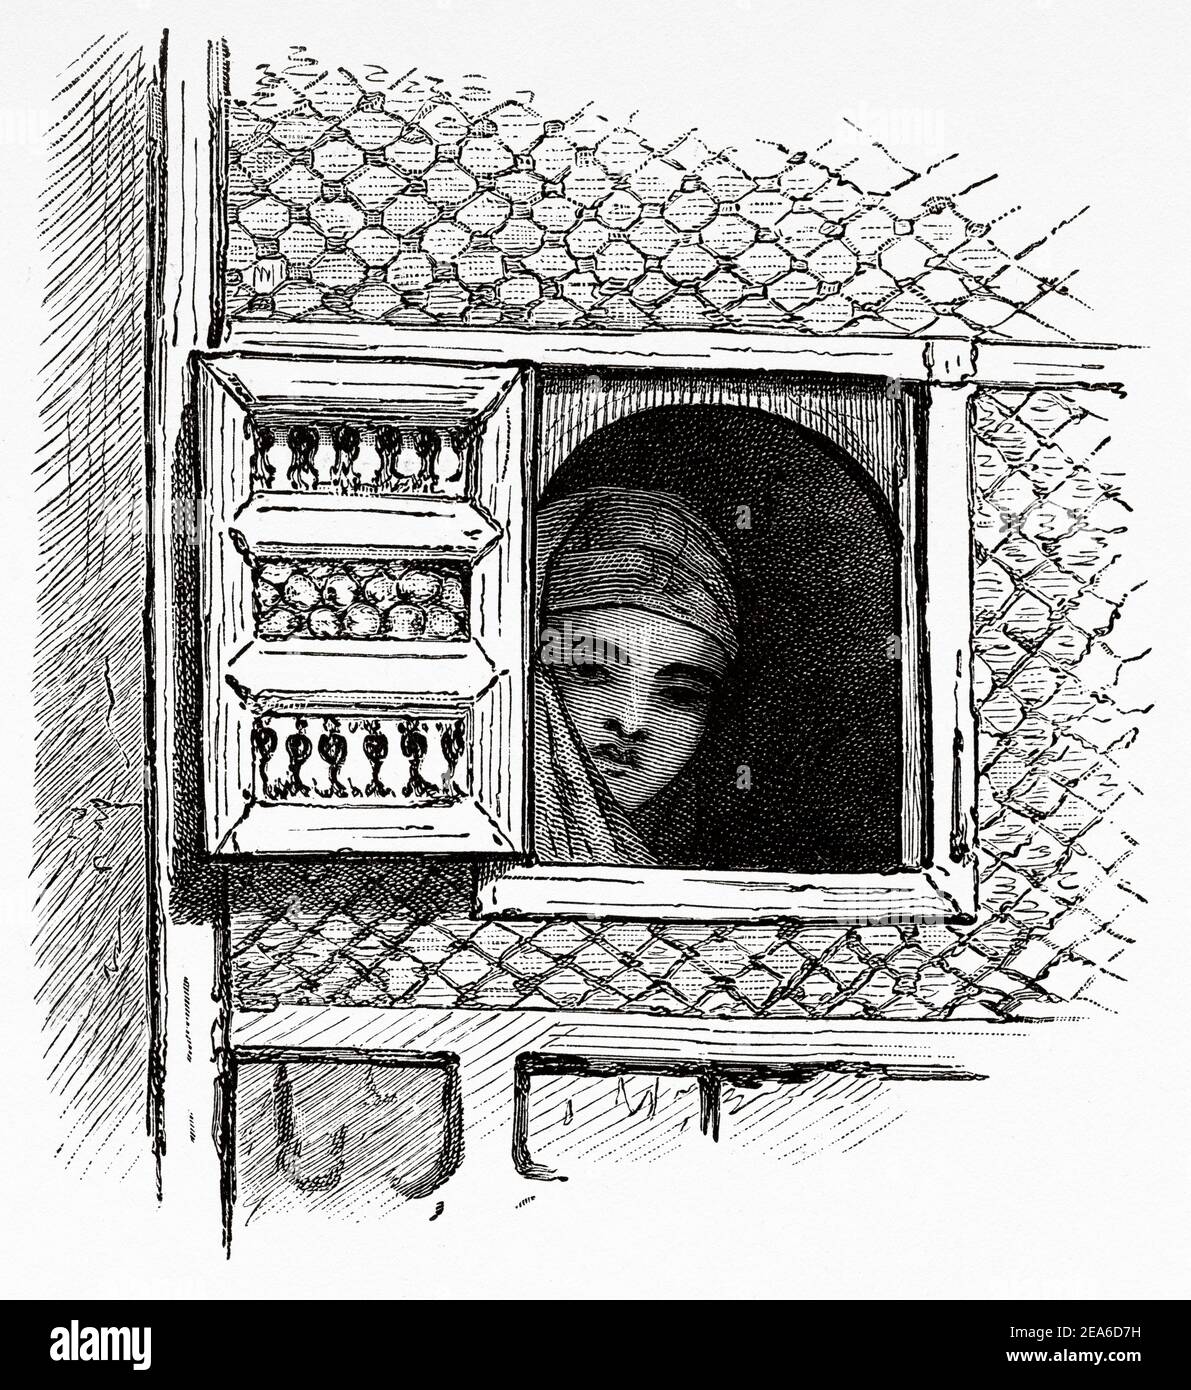 Jeune femme arabe regardant par la fenêtre d'une maison à Alexandrie. Histoire de l'Égypte ancienne. Ancienne illustration gravée du XIXe siècle d'El Mundo Ilustrado 1879 Banque D'Images